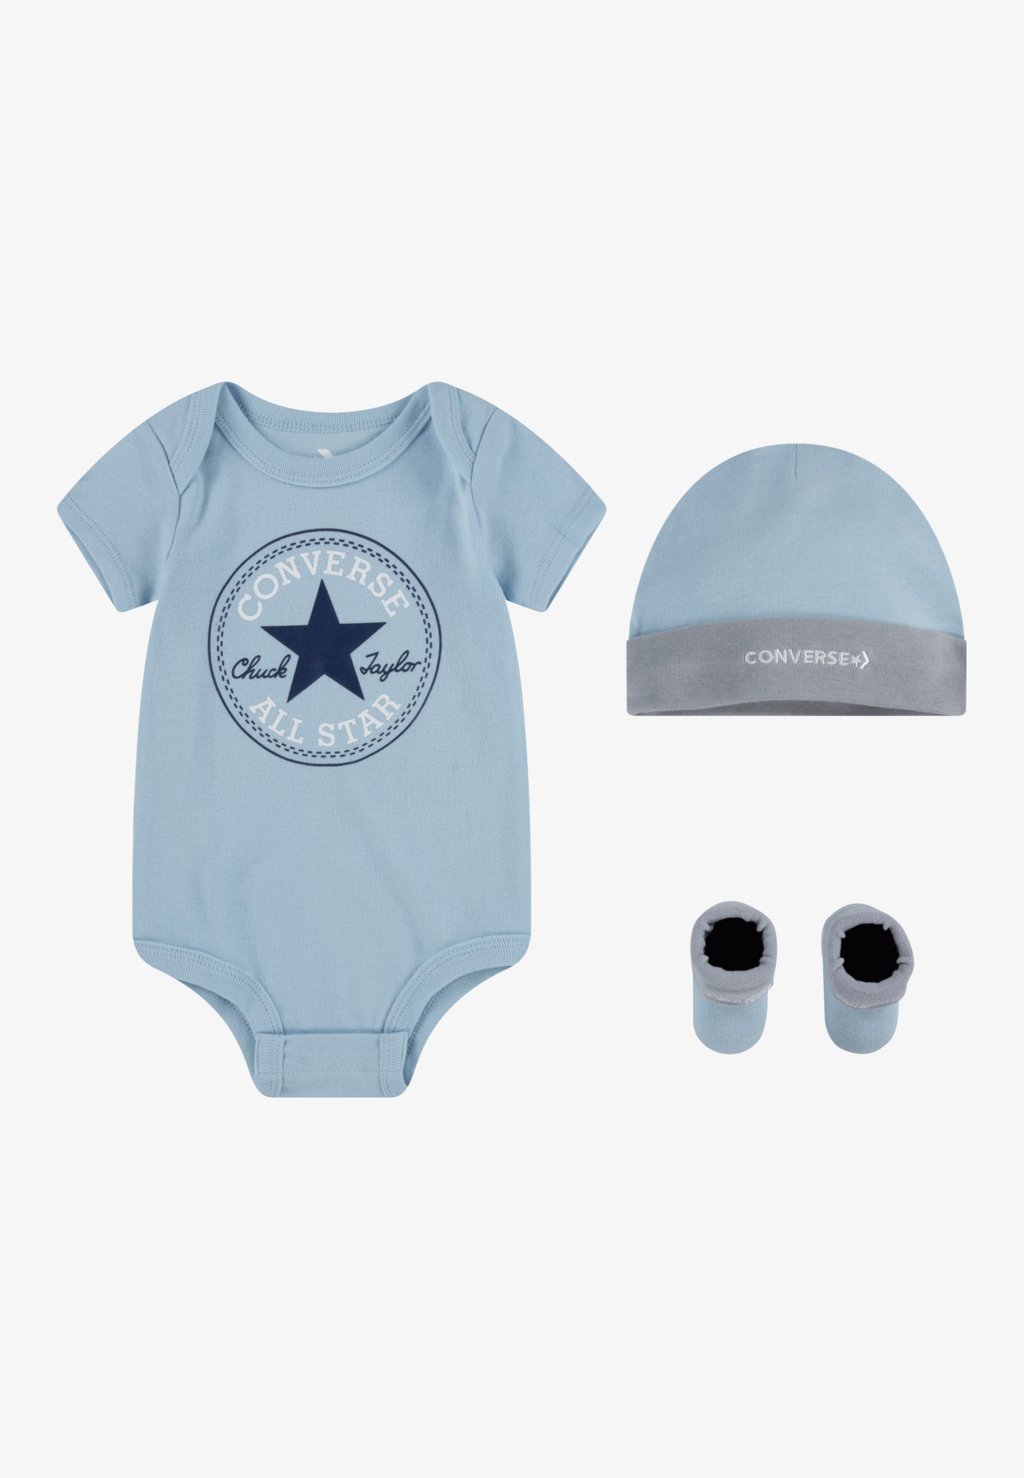 Подарок на рождение CLASSIC INFANT HAT BODYSUIT BOOTIE UNISEX SET Converse, цвет pacific blue coast the pacific coast